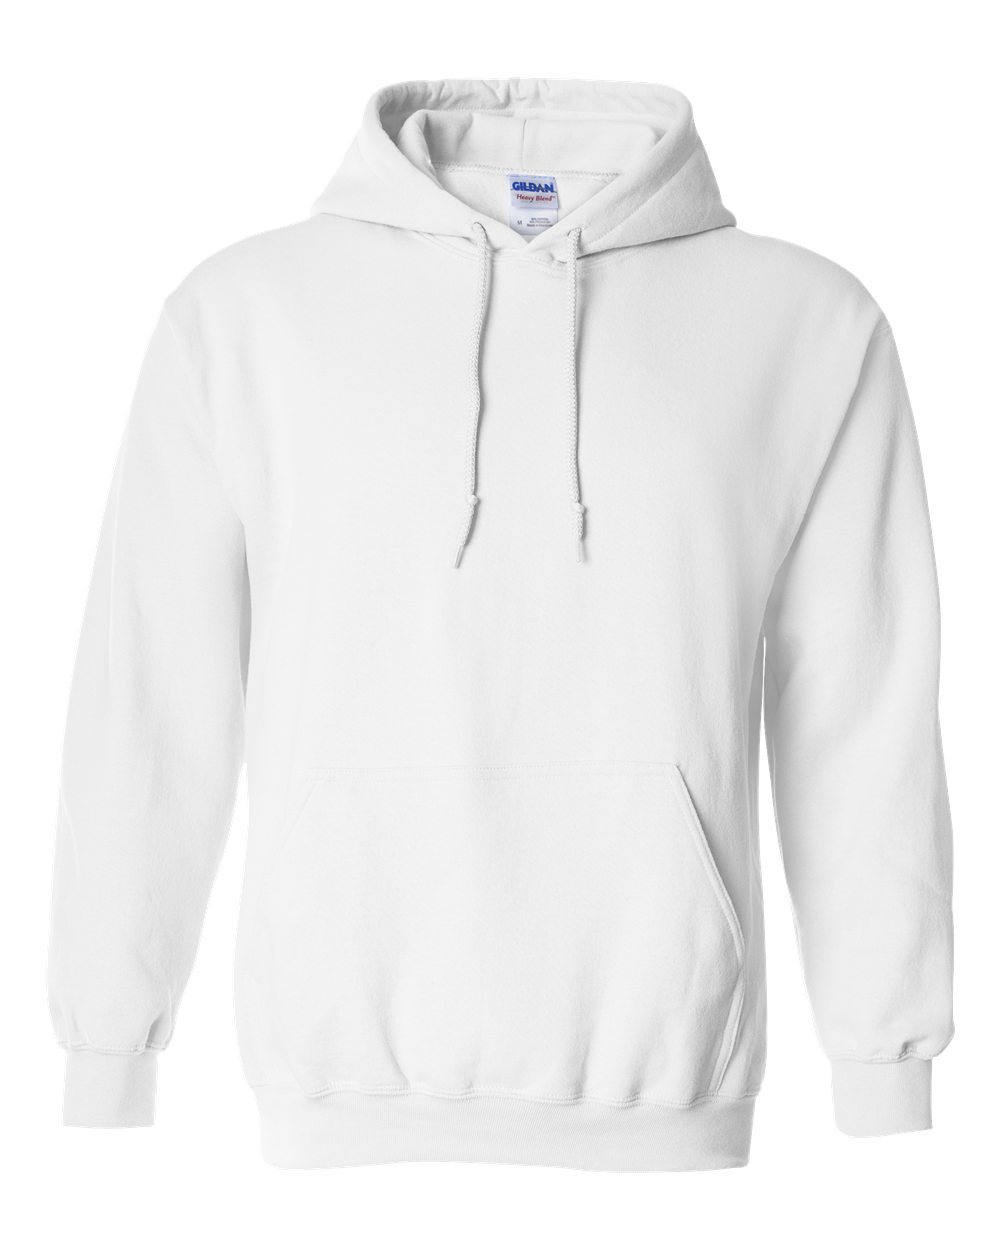 Unisex Adults Hooded Plain Sweatshirt Top Gildan Heavy Blend Hoodie Pullover 